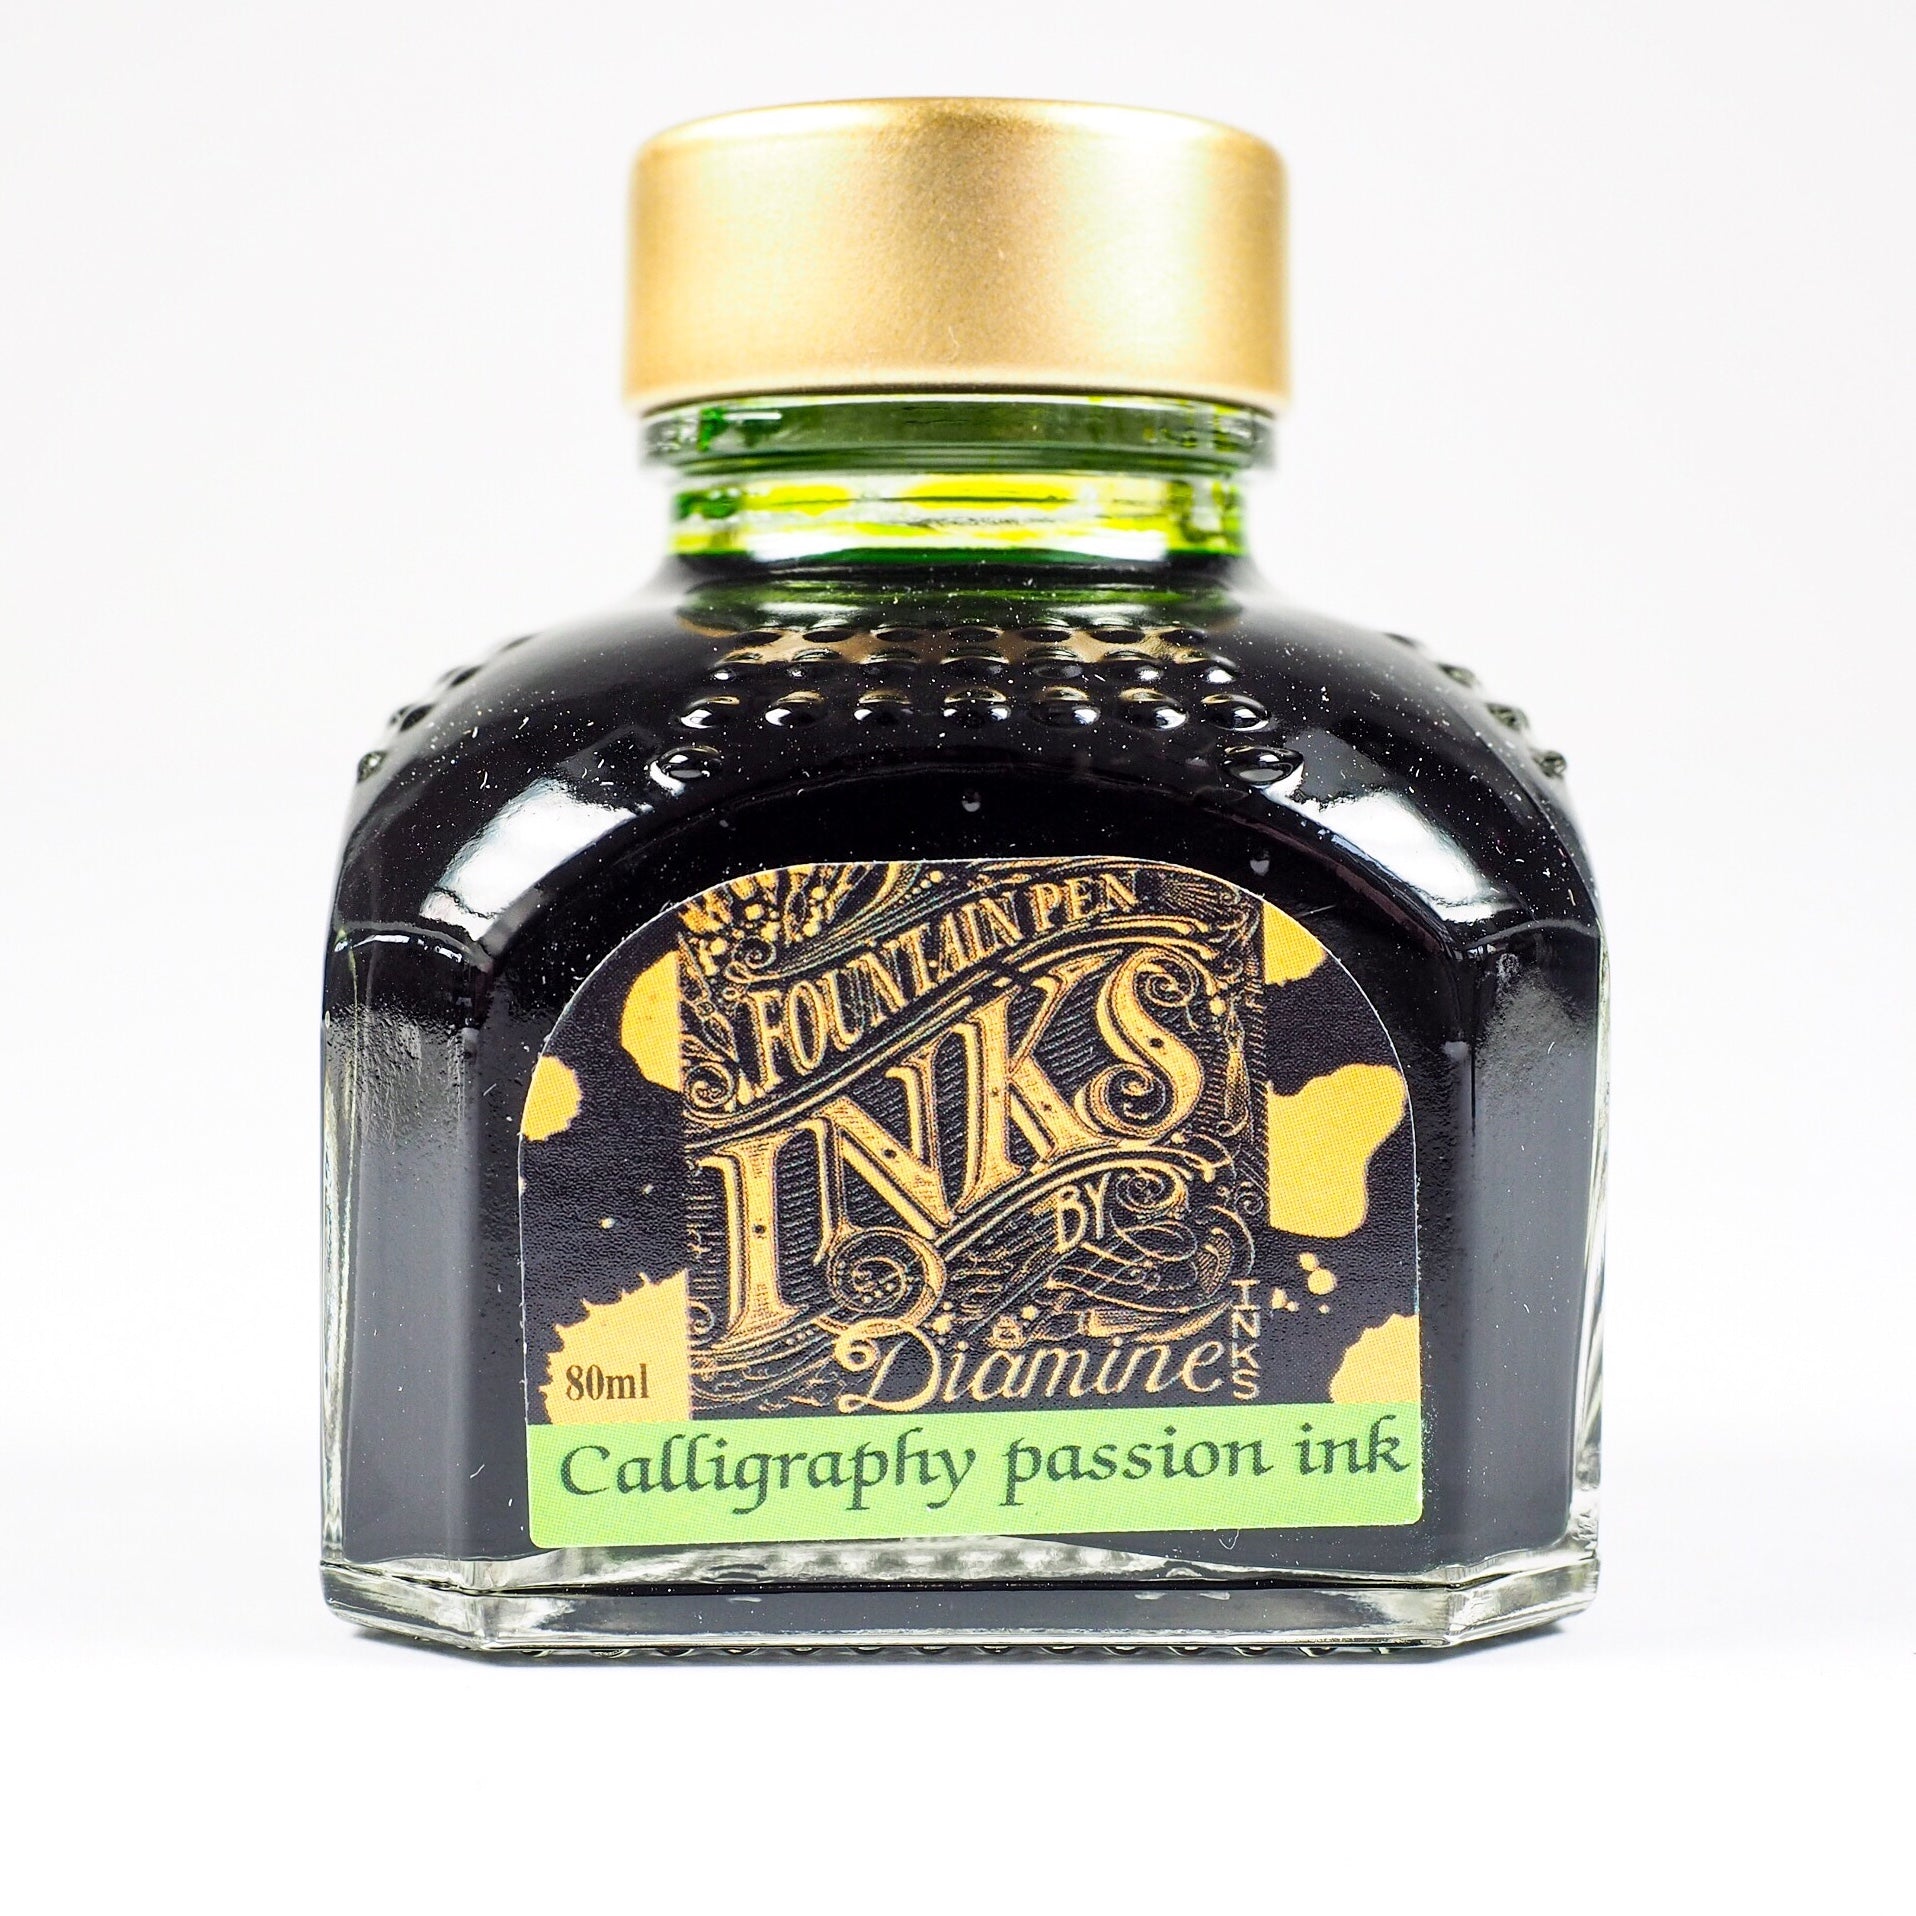 Calligraphy Passion Ink von Diamine in einer 80ml Glasflasche mit goldenem Deckel.